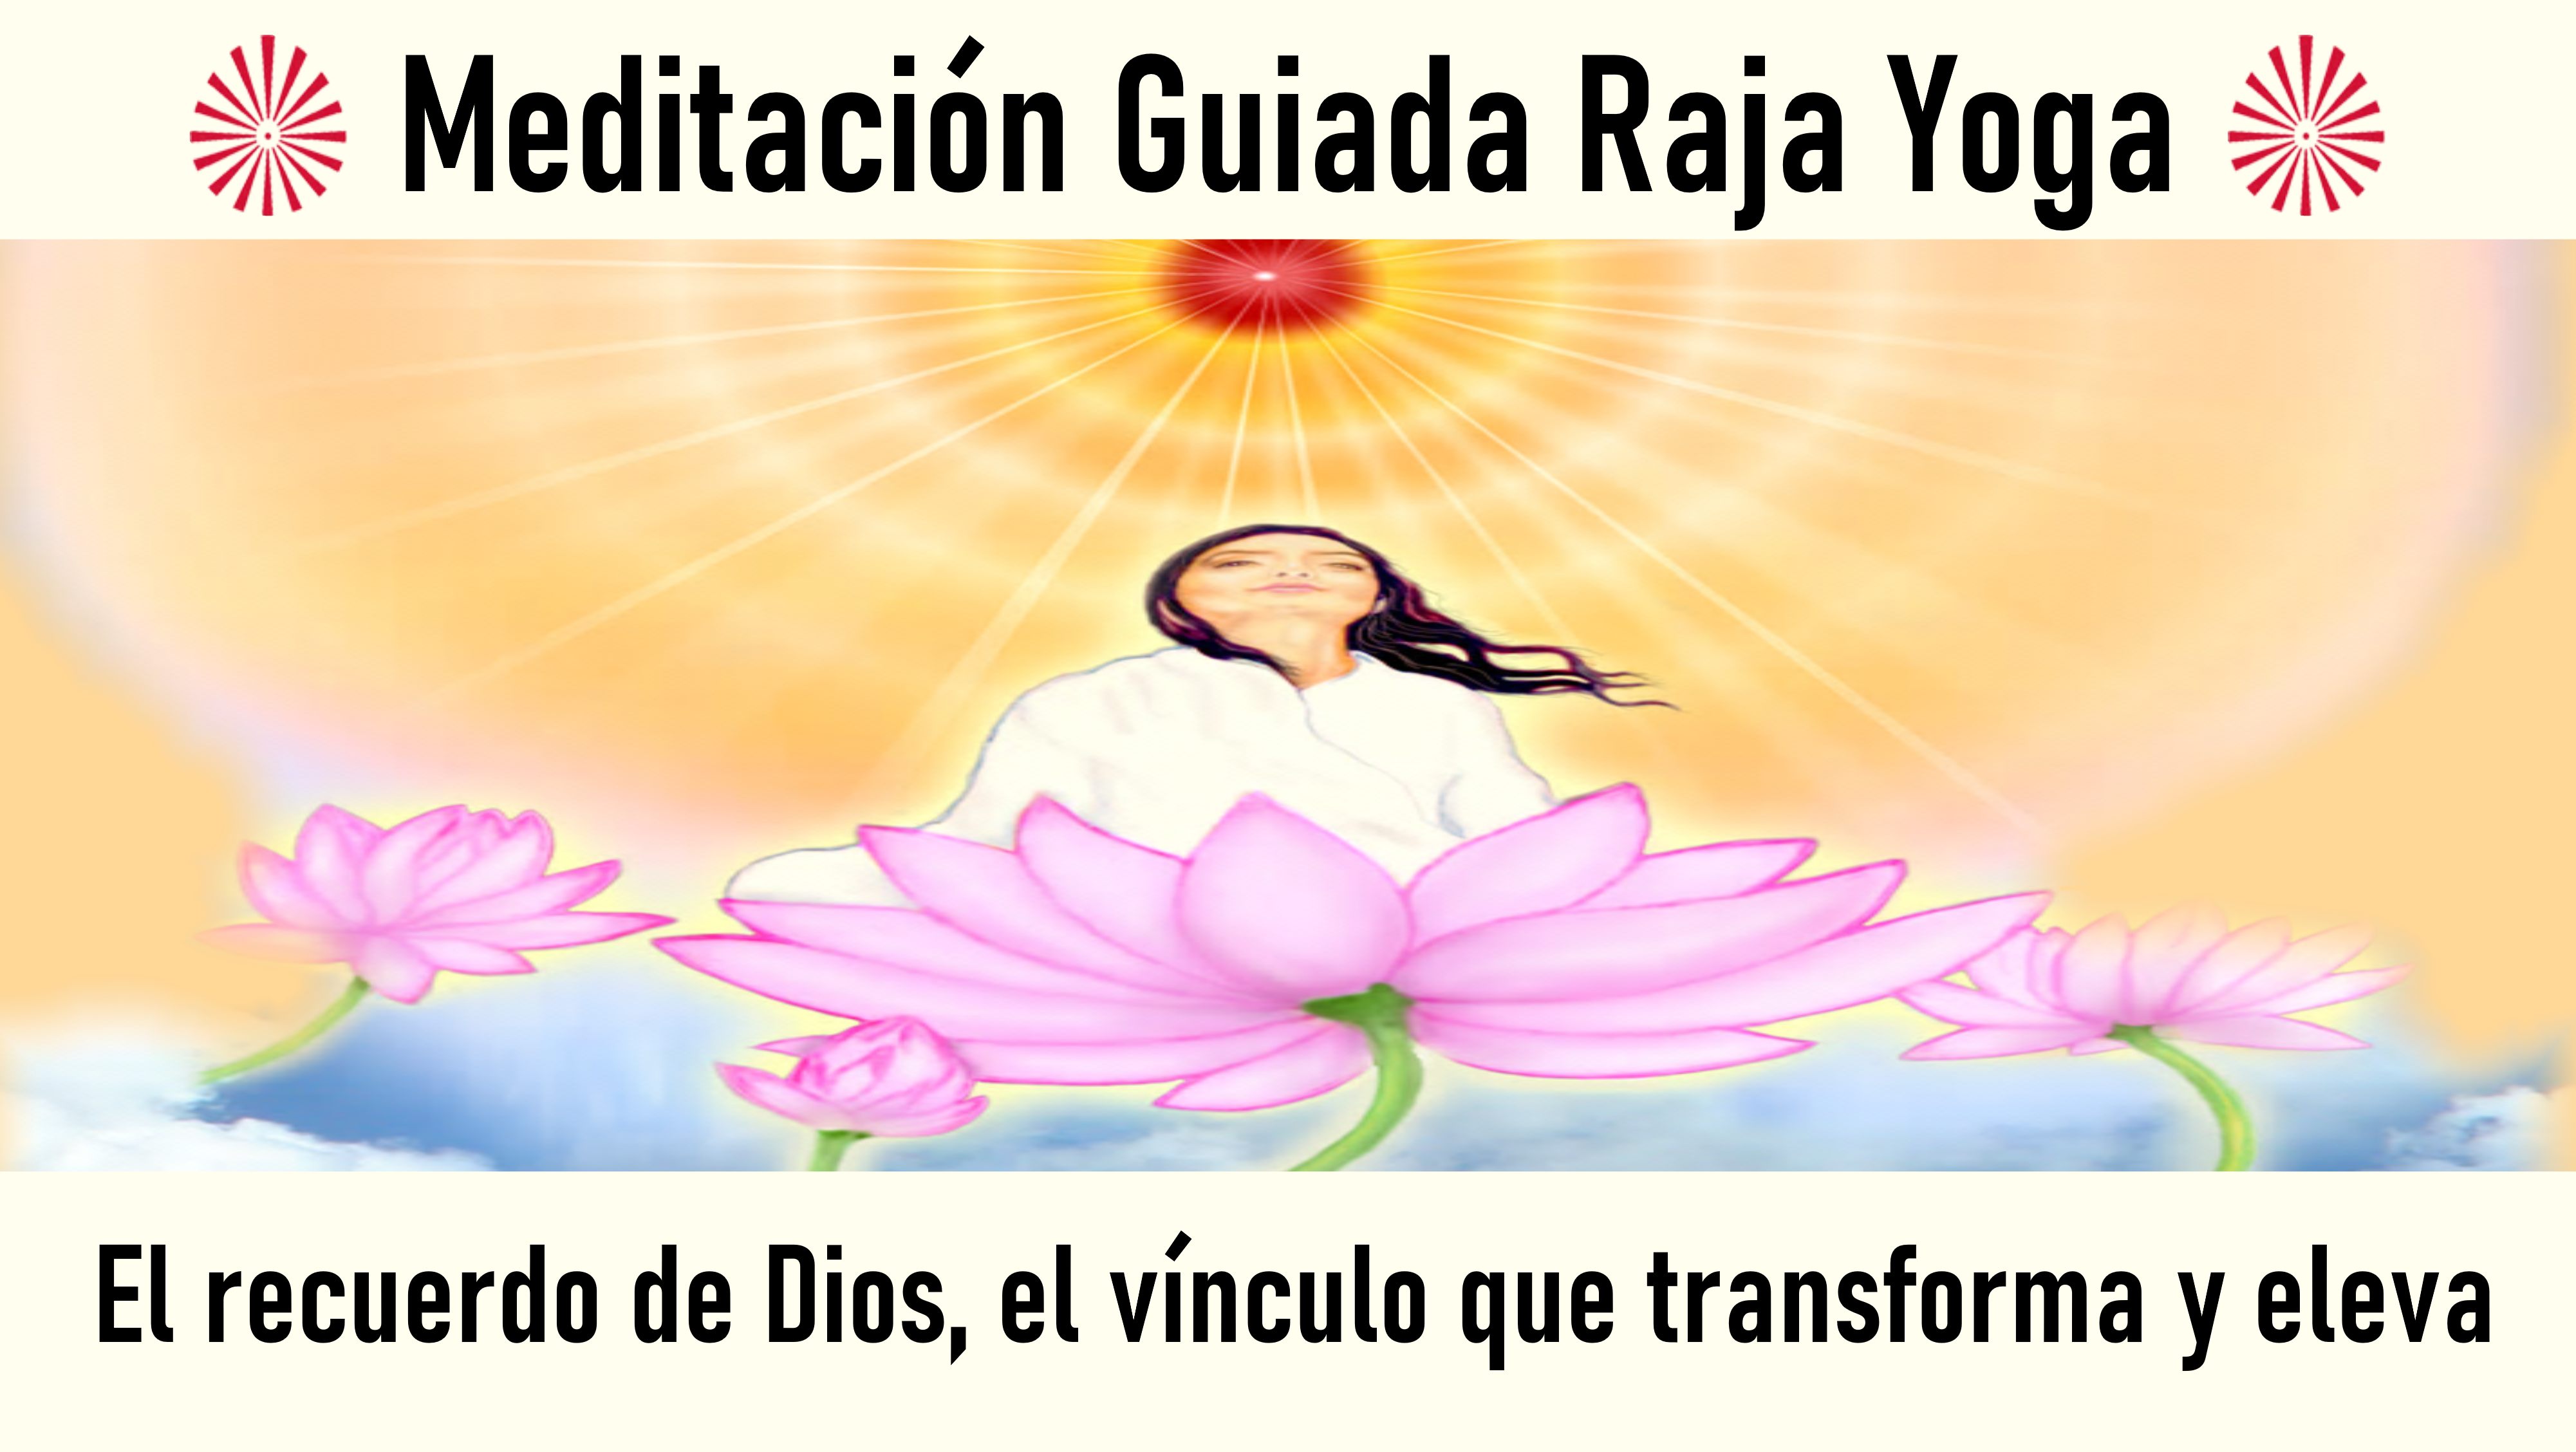 Meditación Raja Yoga: El recuerdo de Dios, el vínculo que transforma y eleva (24 Junio 2020) On-line desde Madrid